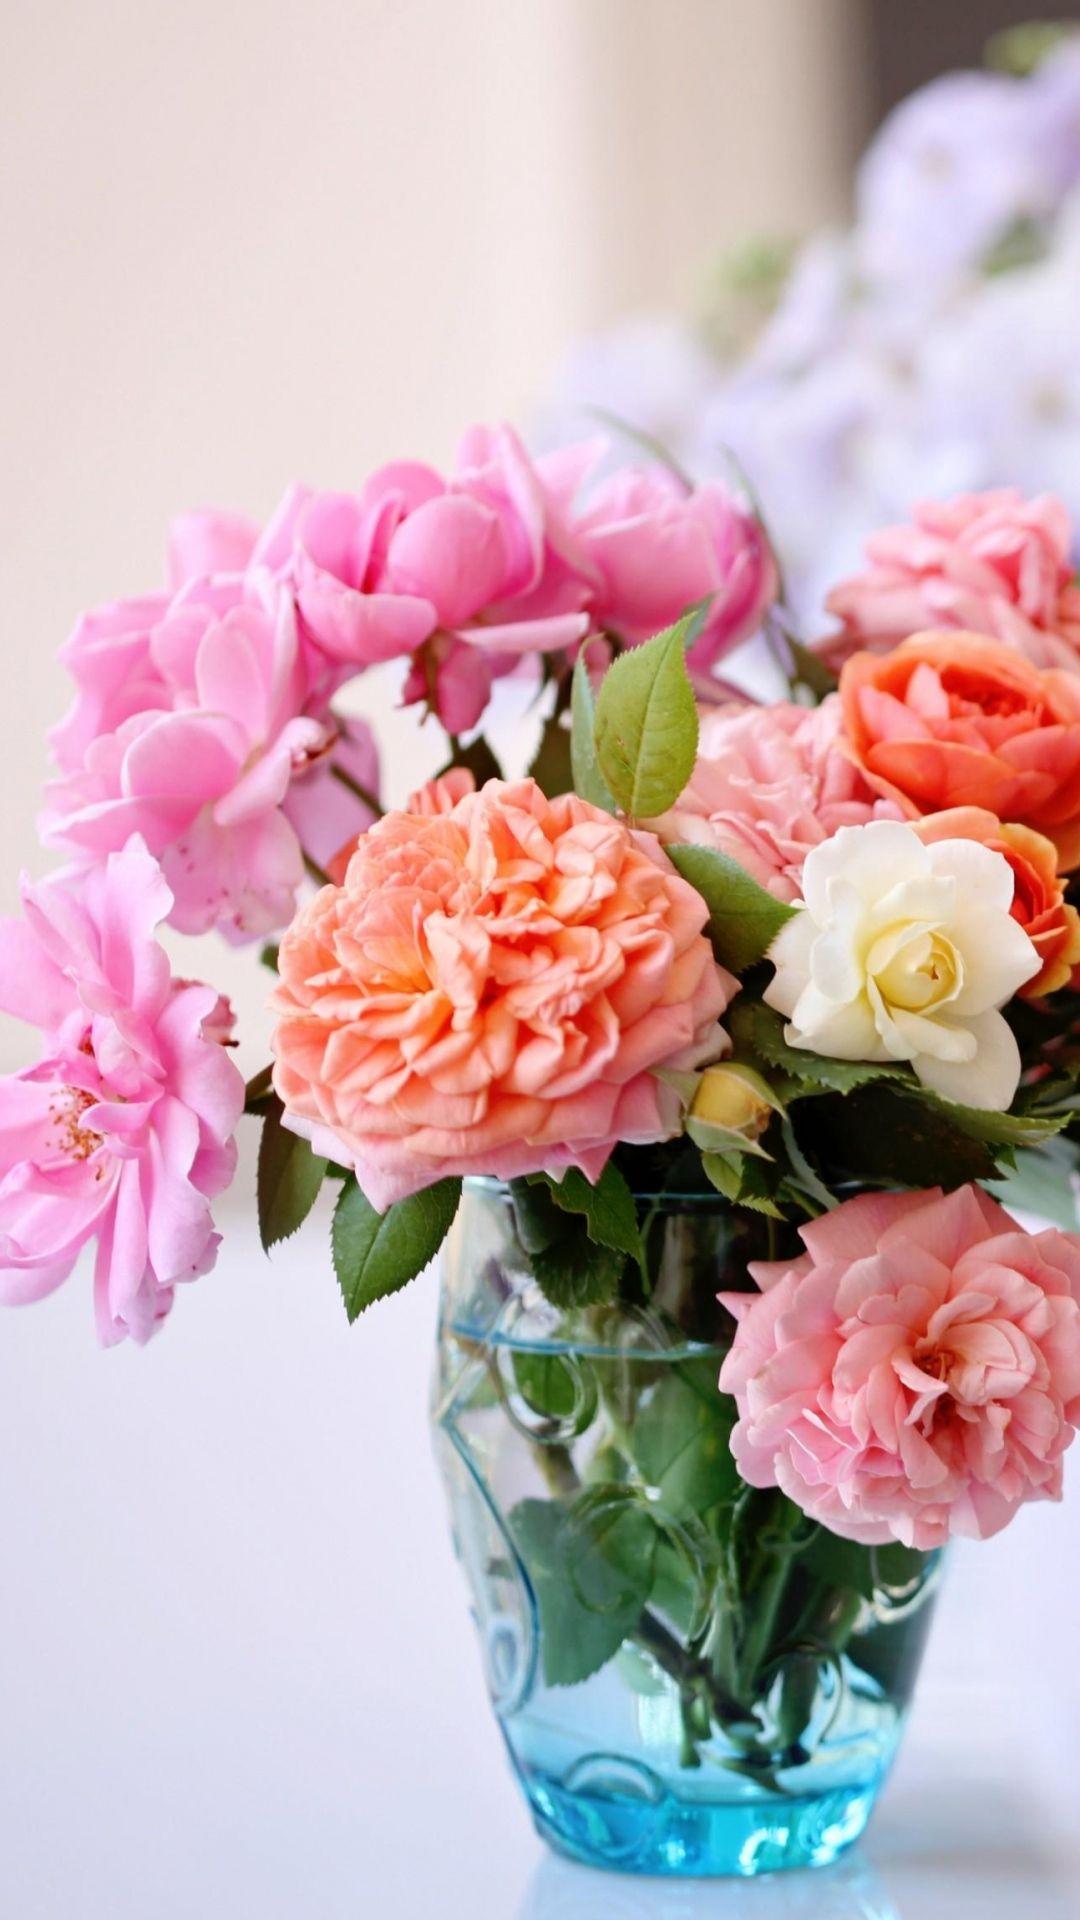 Download Wallpaper 1080x1920 roses, flowers, garden, flower, vase